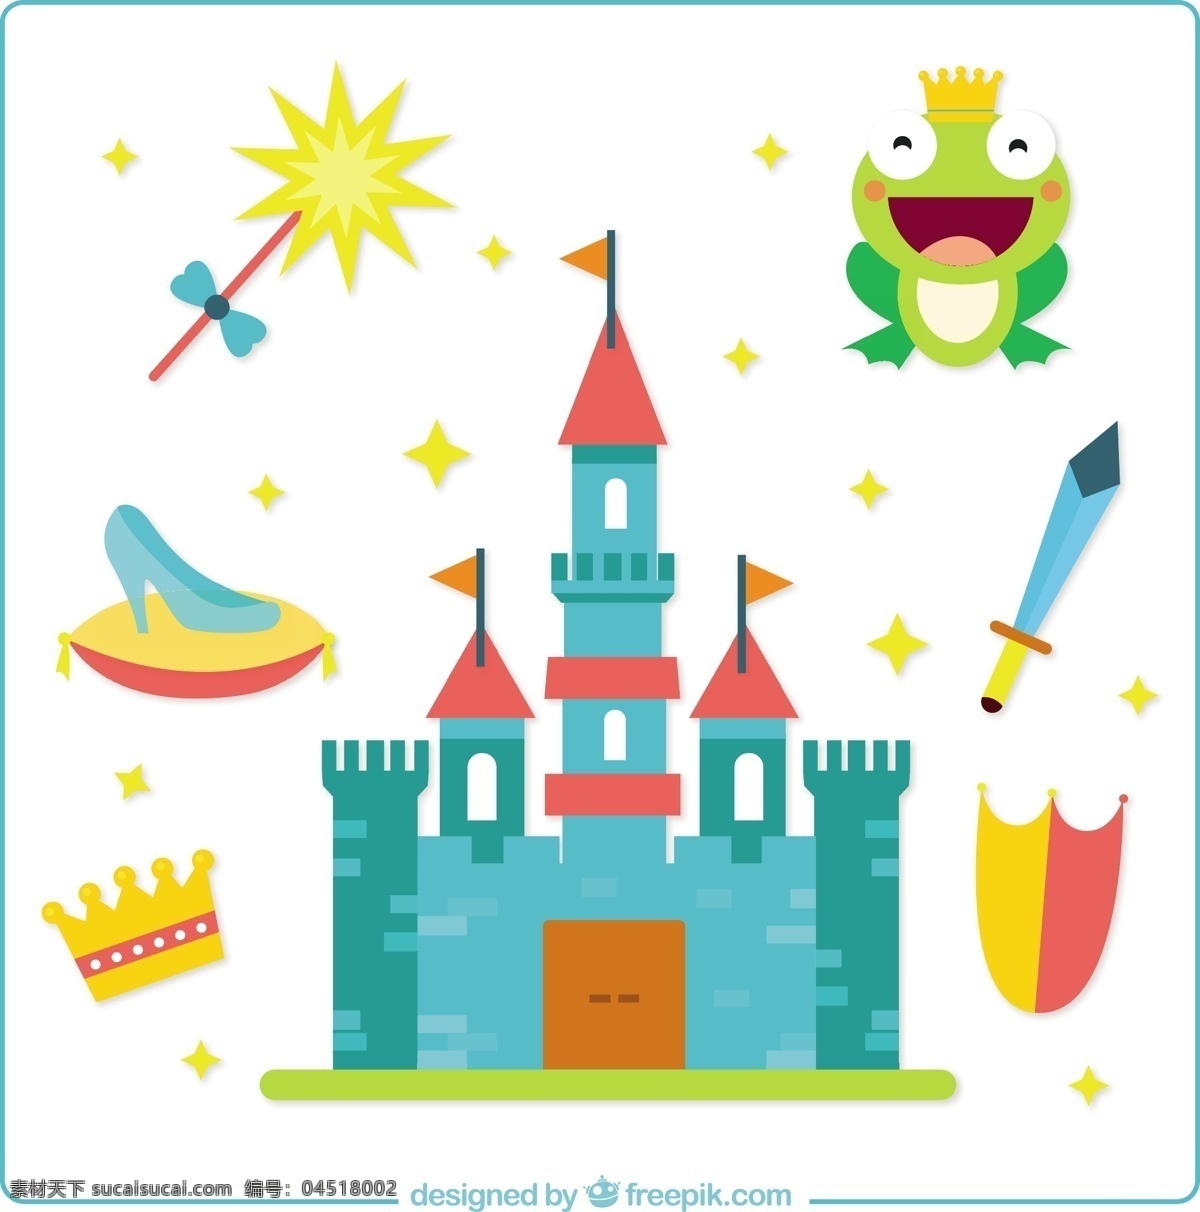 平面设计 中 童话 元素 皇冠 屏蔽 平面 星星 可爱 城堡 创意 梦想 剑 青蛙 创造力 幻想 想象 美好 棒 白色